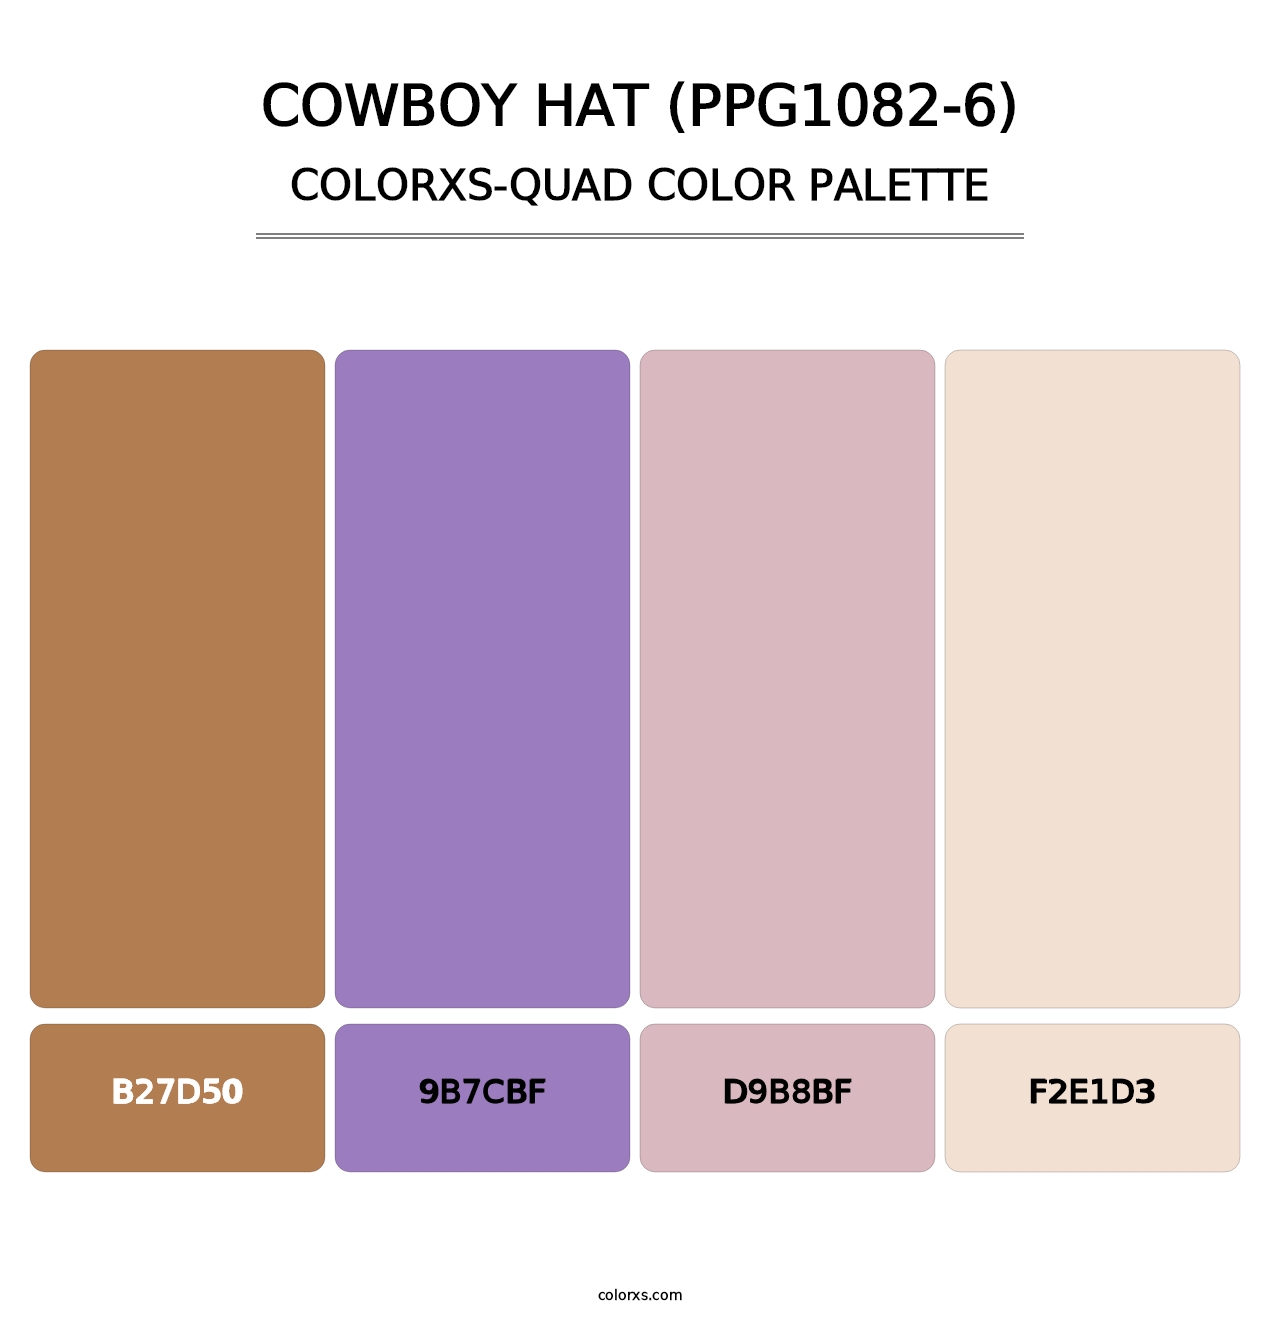 Cowboy Hat (PPG1082-6) - Colorxs Quad Palette